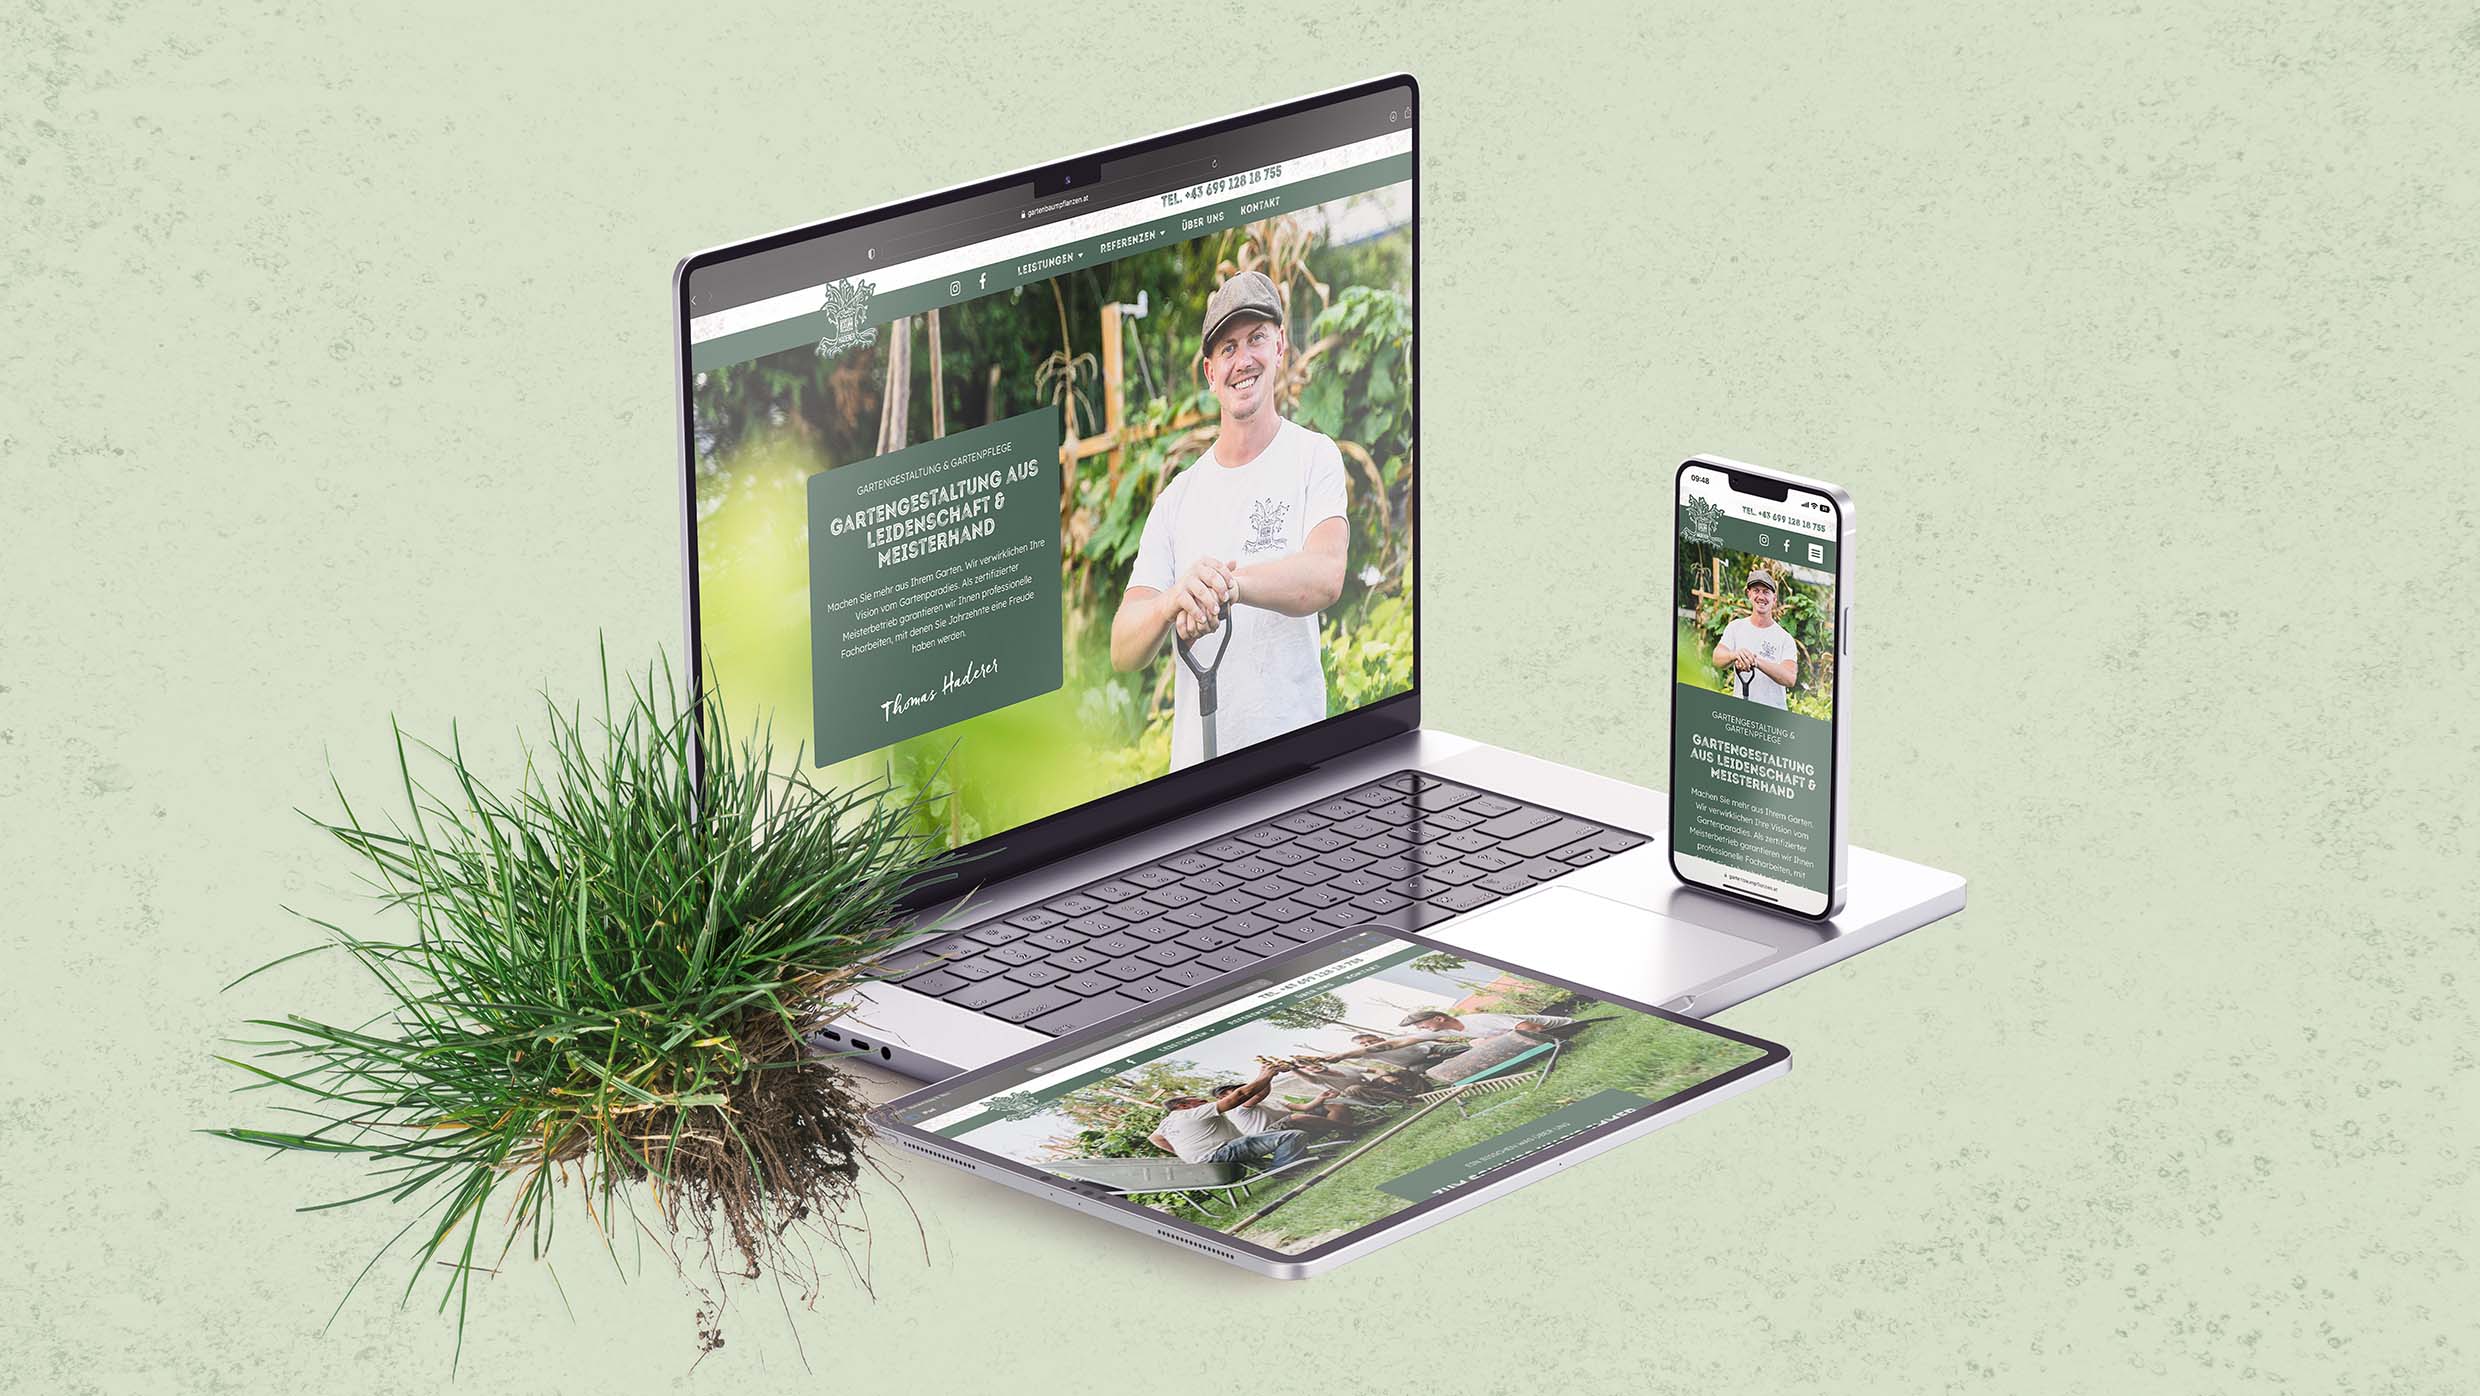 Gartenbau Thomas Haderer Website